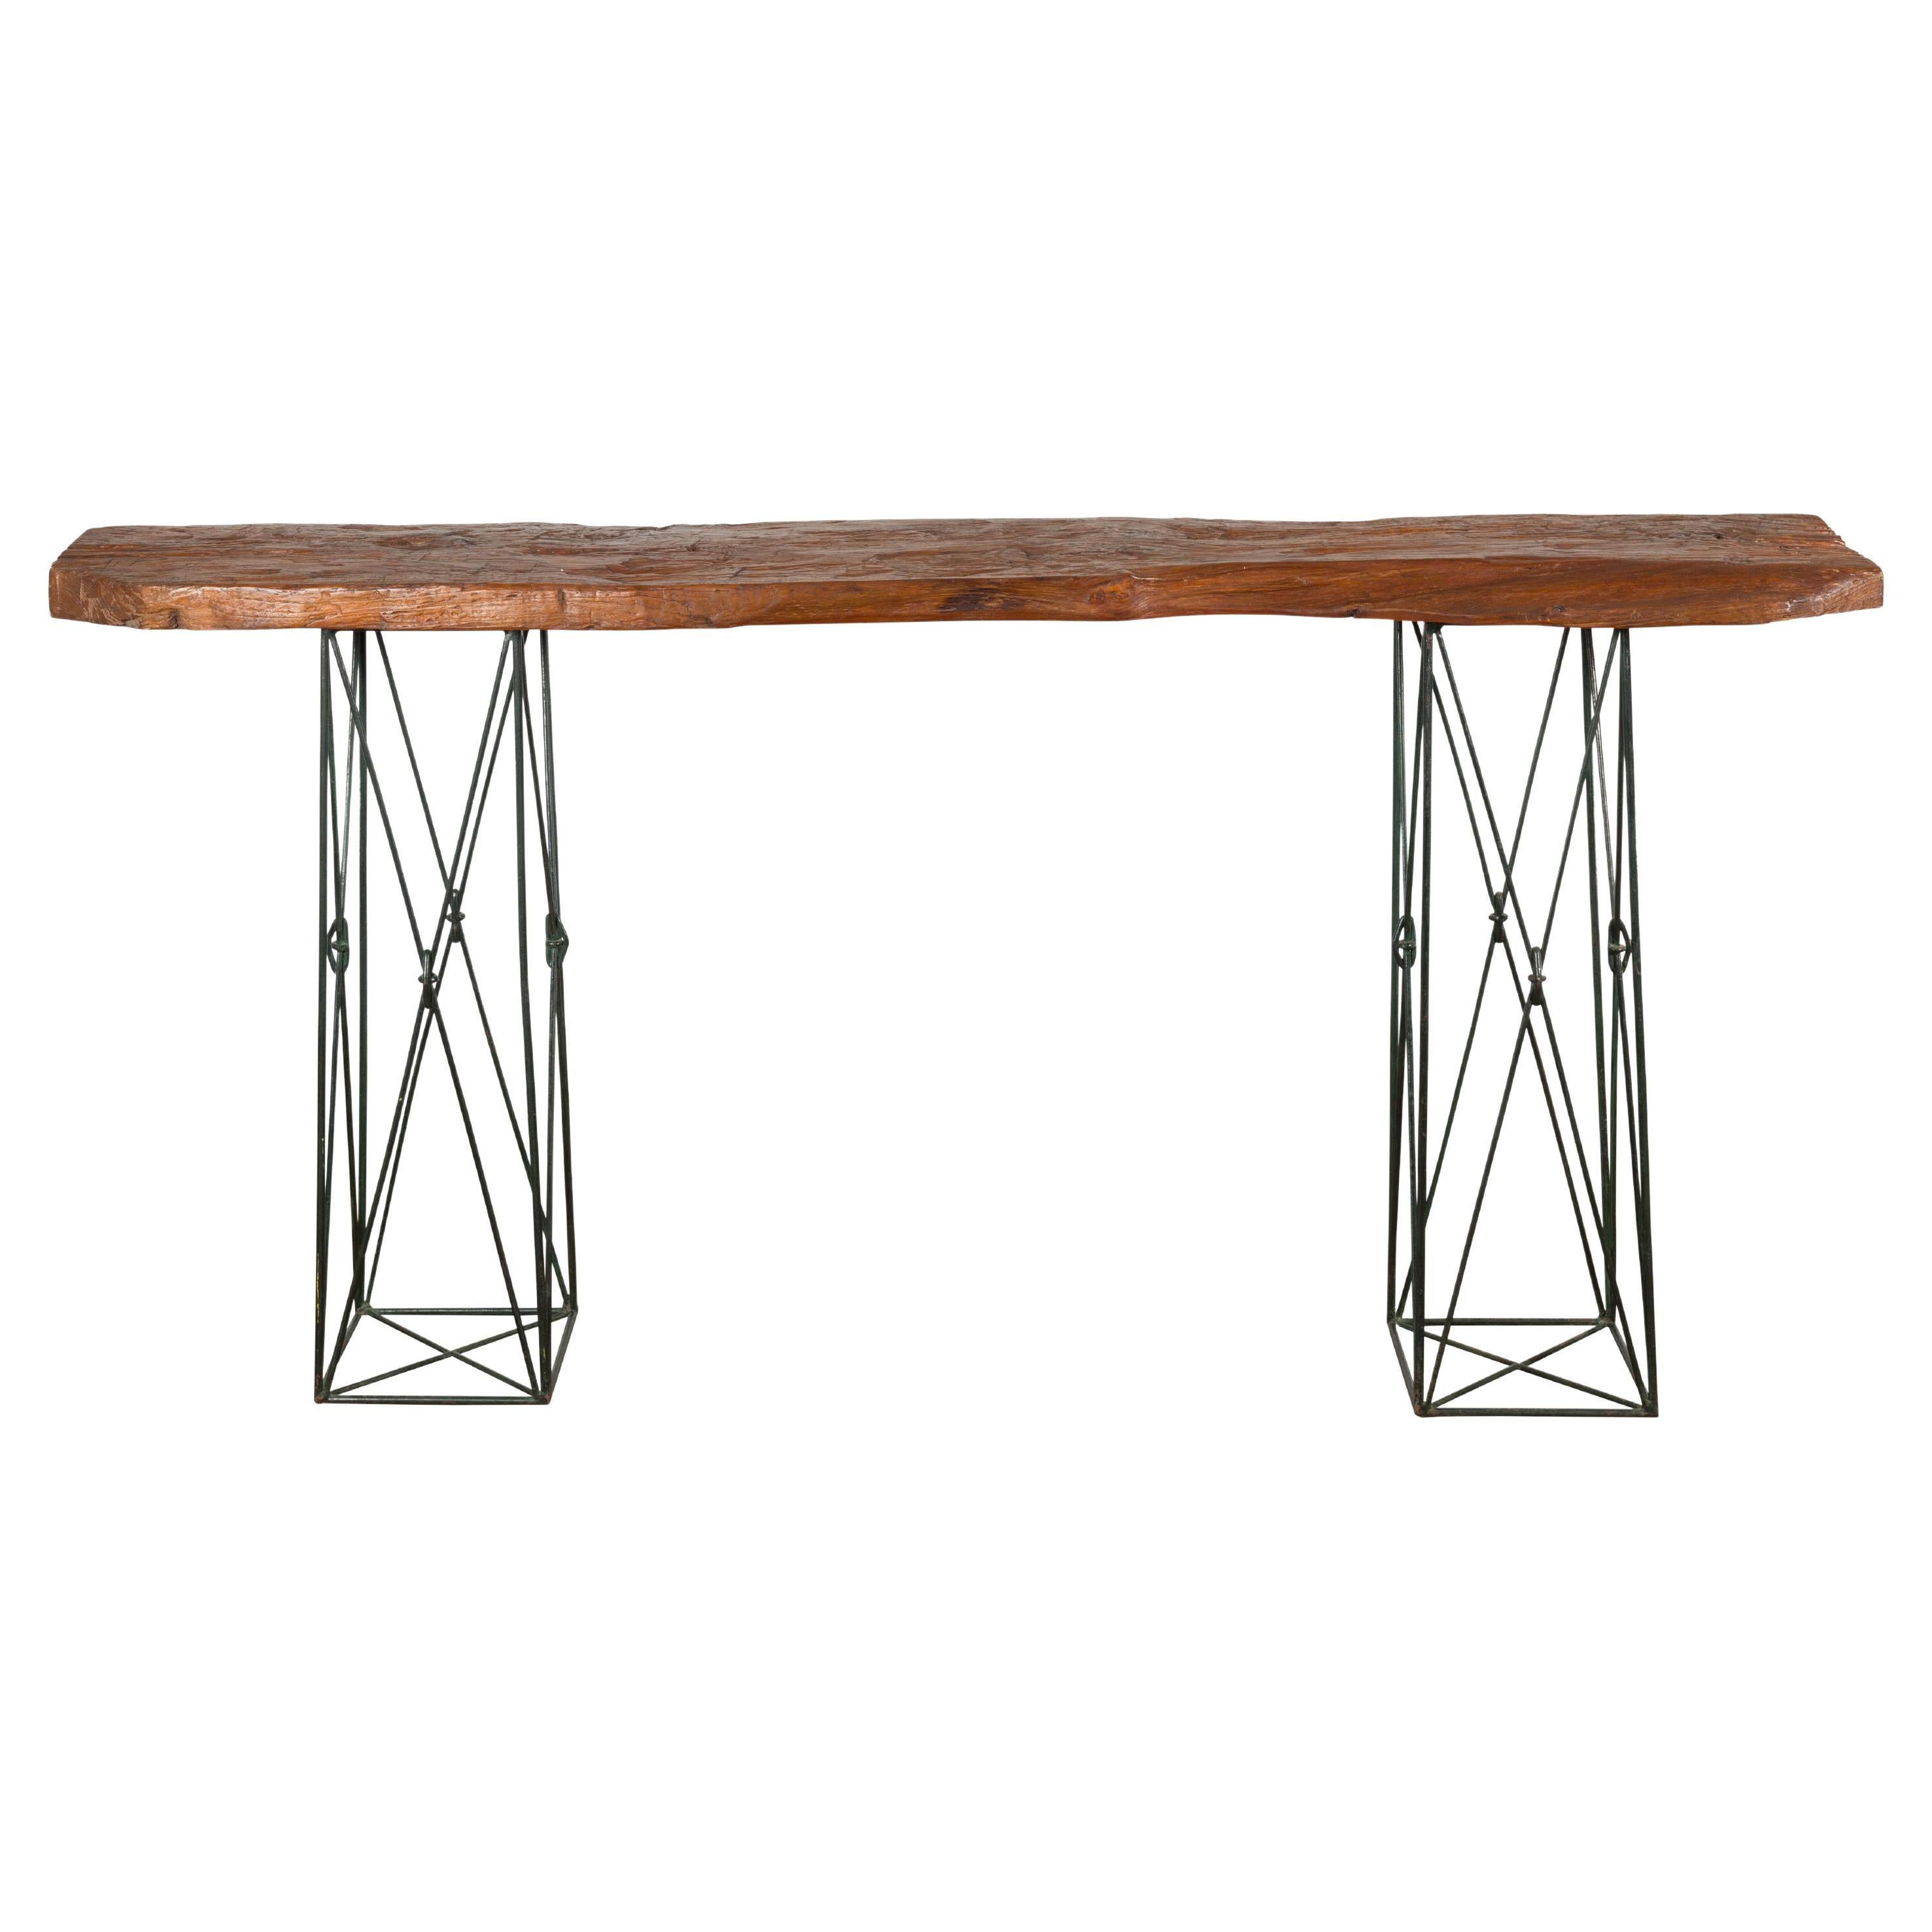 Table console contemporaine avec plateau en bois de récupération et bases en métal